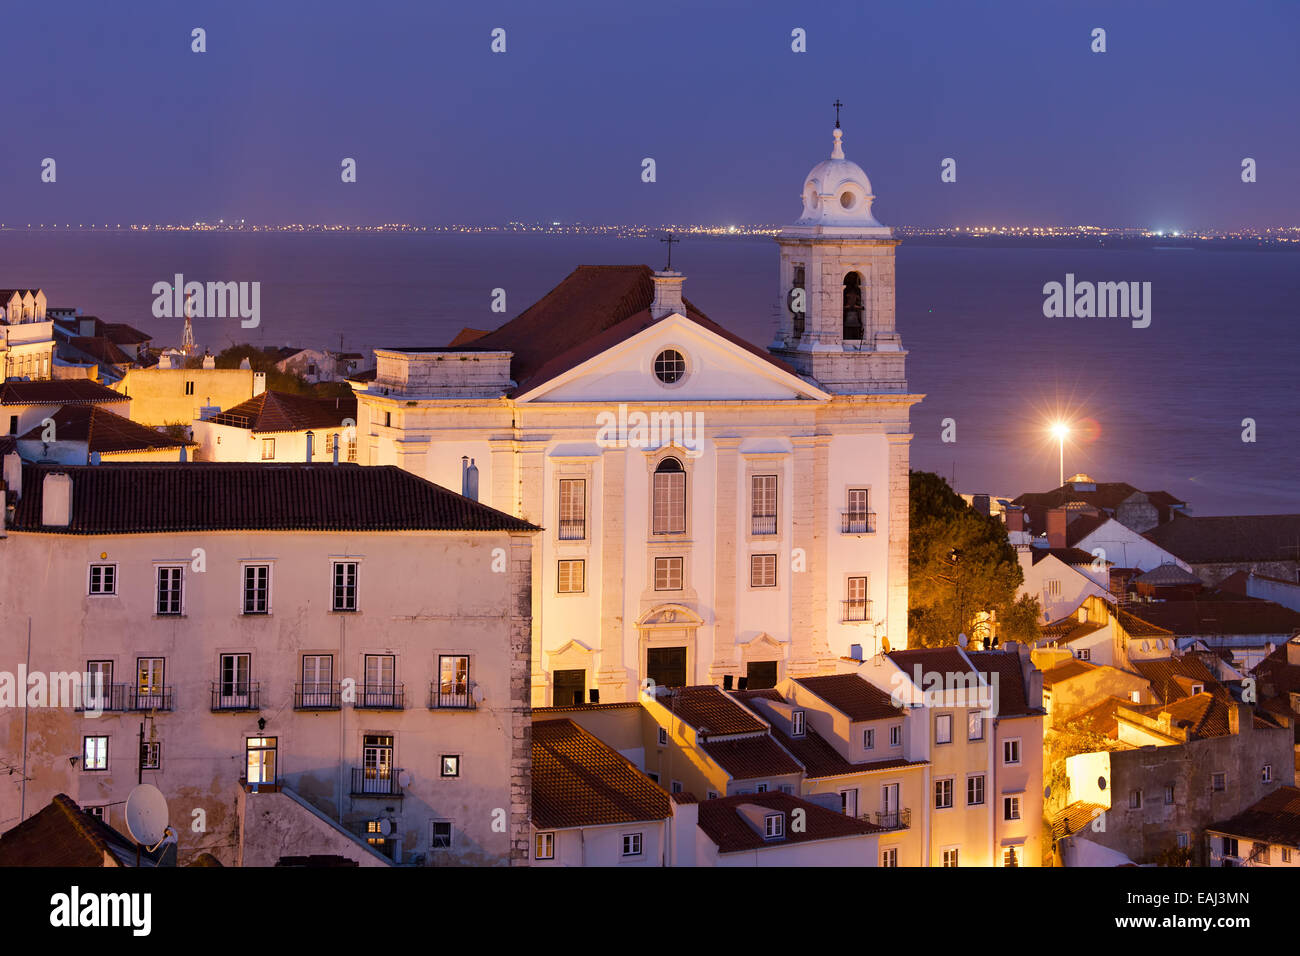 Santo Estevao Kirche nachts im alten Alfama Viertel von Lissabon in Portugal, Tejo im Hintergrund. Stockfoto